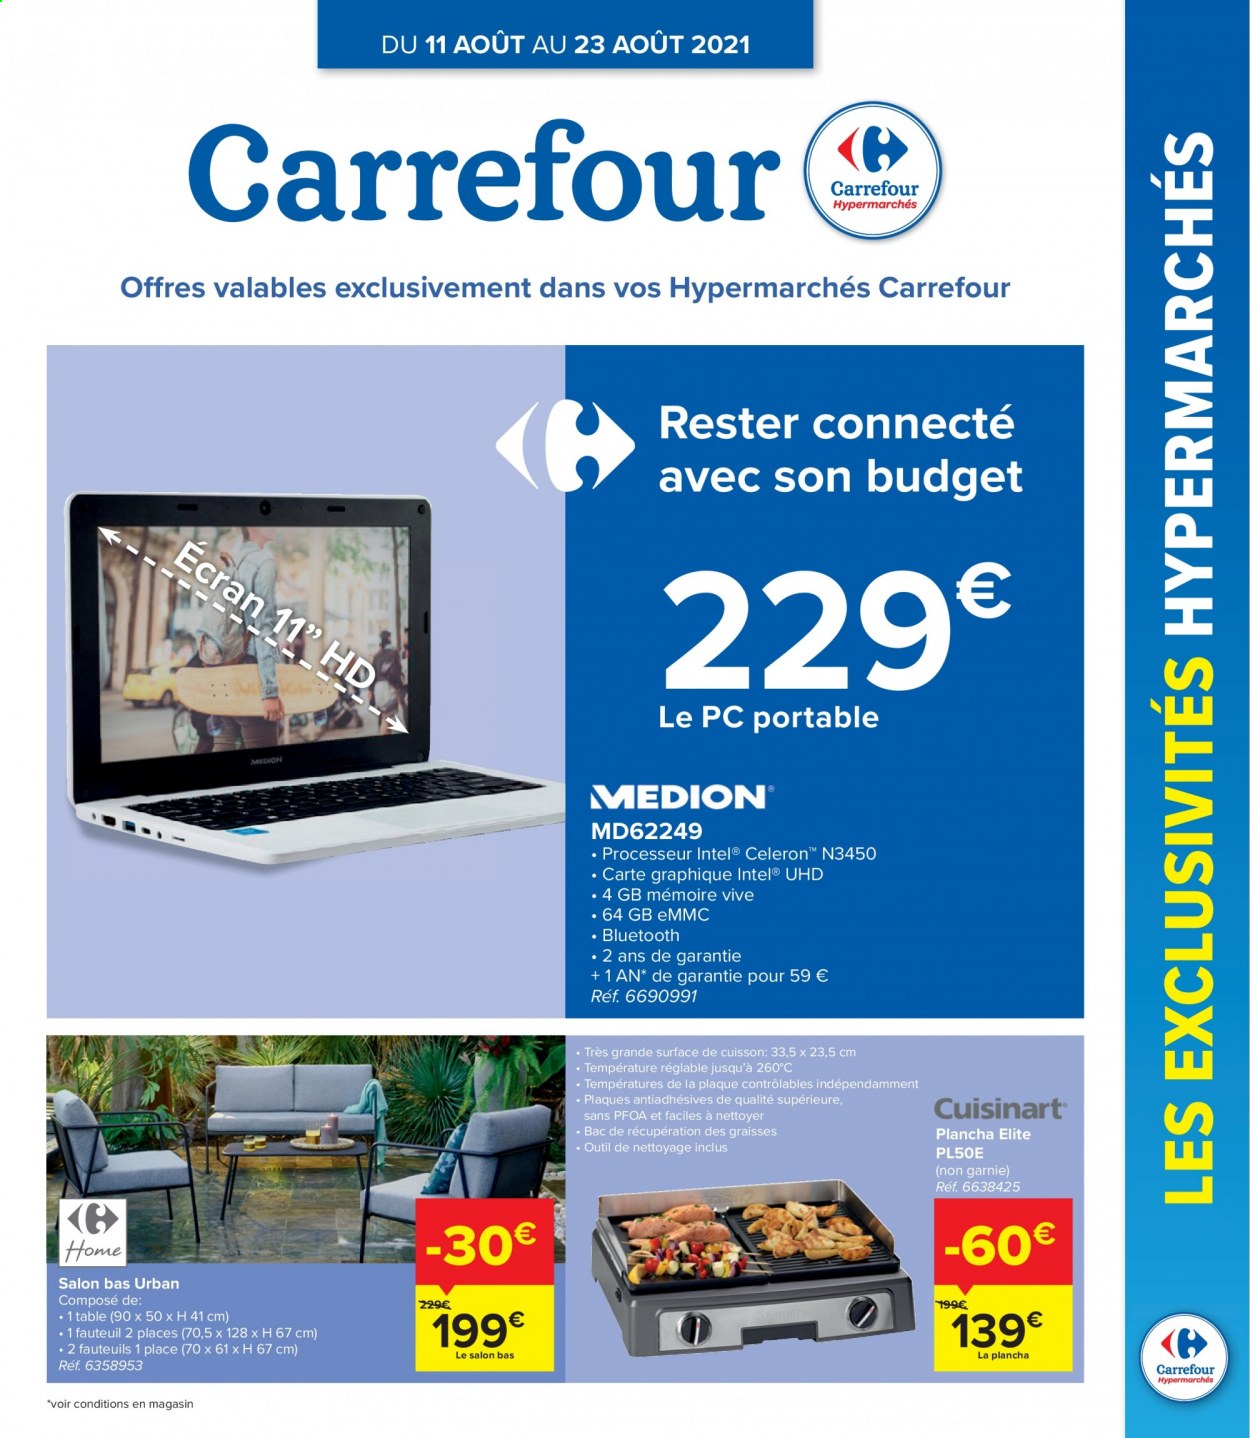 thumbnail - Catalogue Carrefour hypermarkt - 11/08/2021 - 23/08/2021 - Produits soldés - pc portable, table, fauteuil, plancha. Page 1.